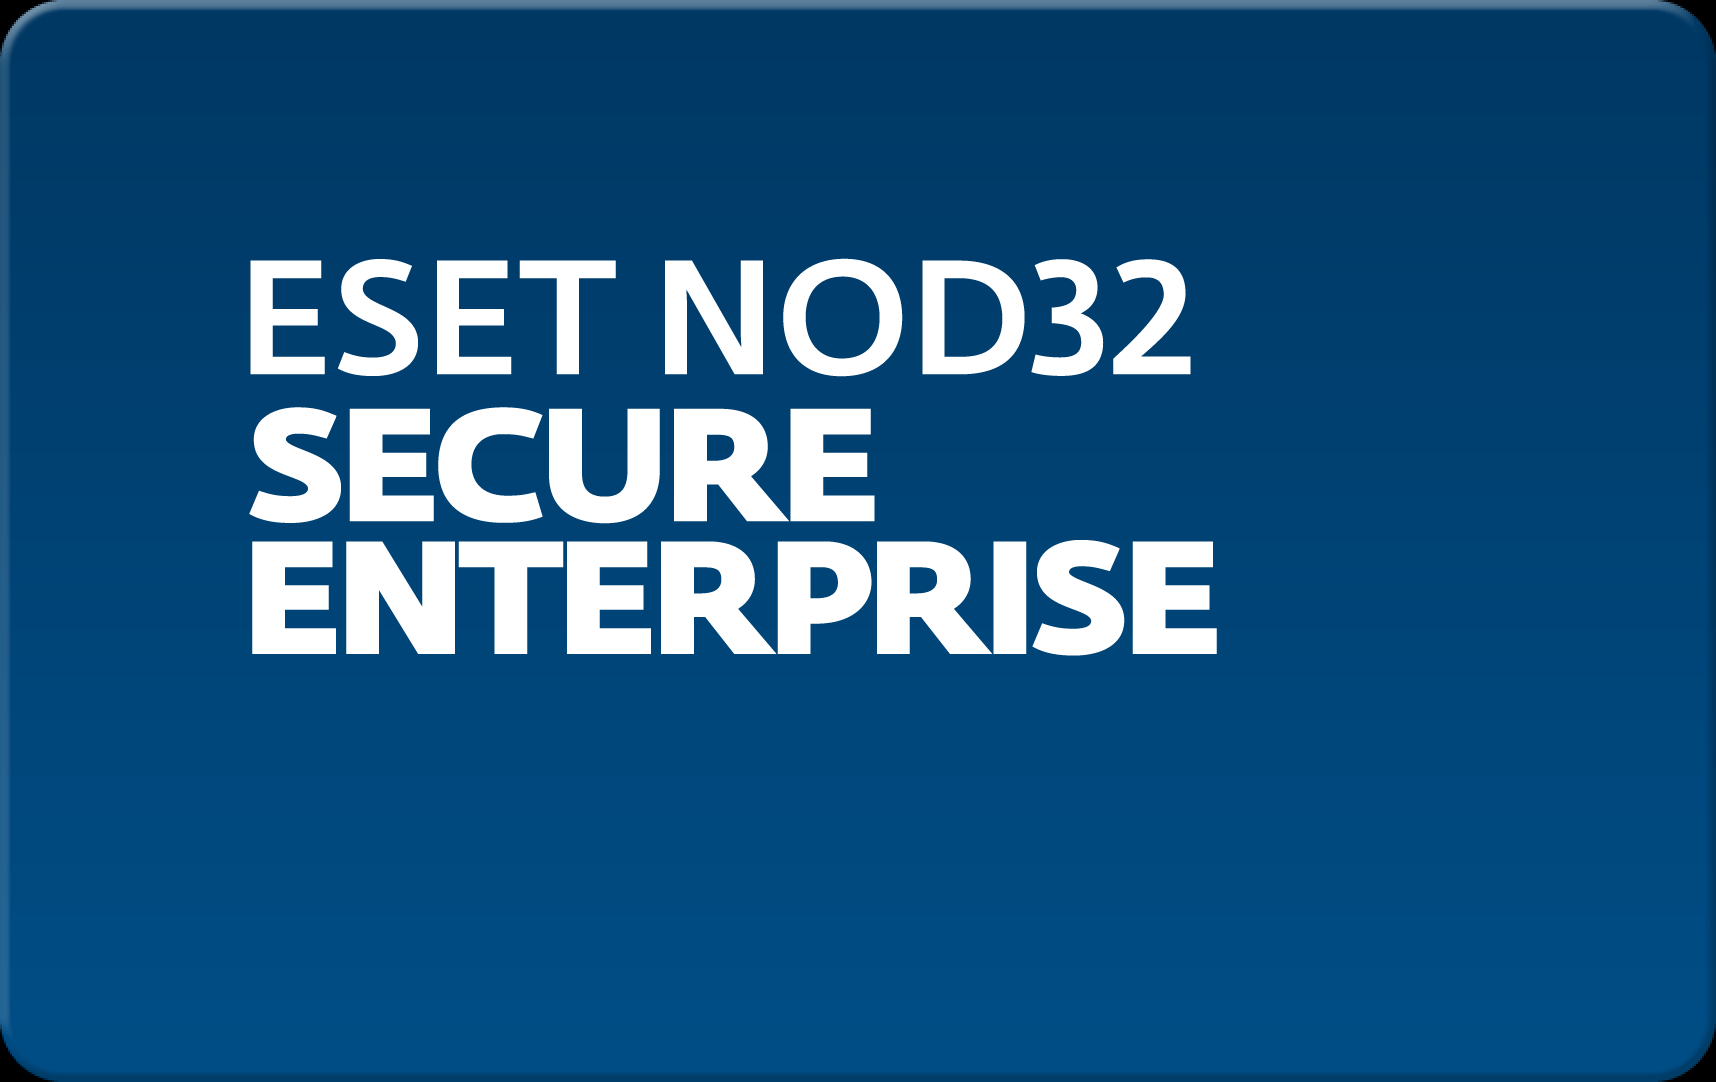        Eset NOD32 Secure Enterprise  175 